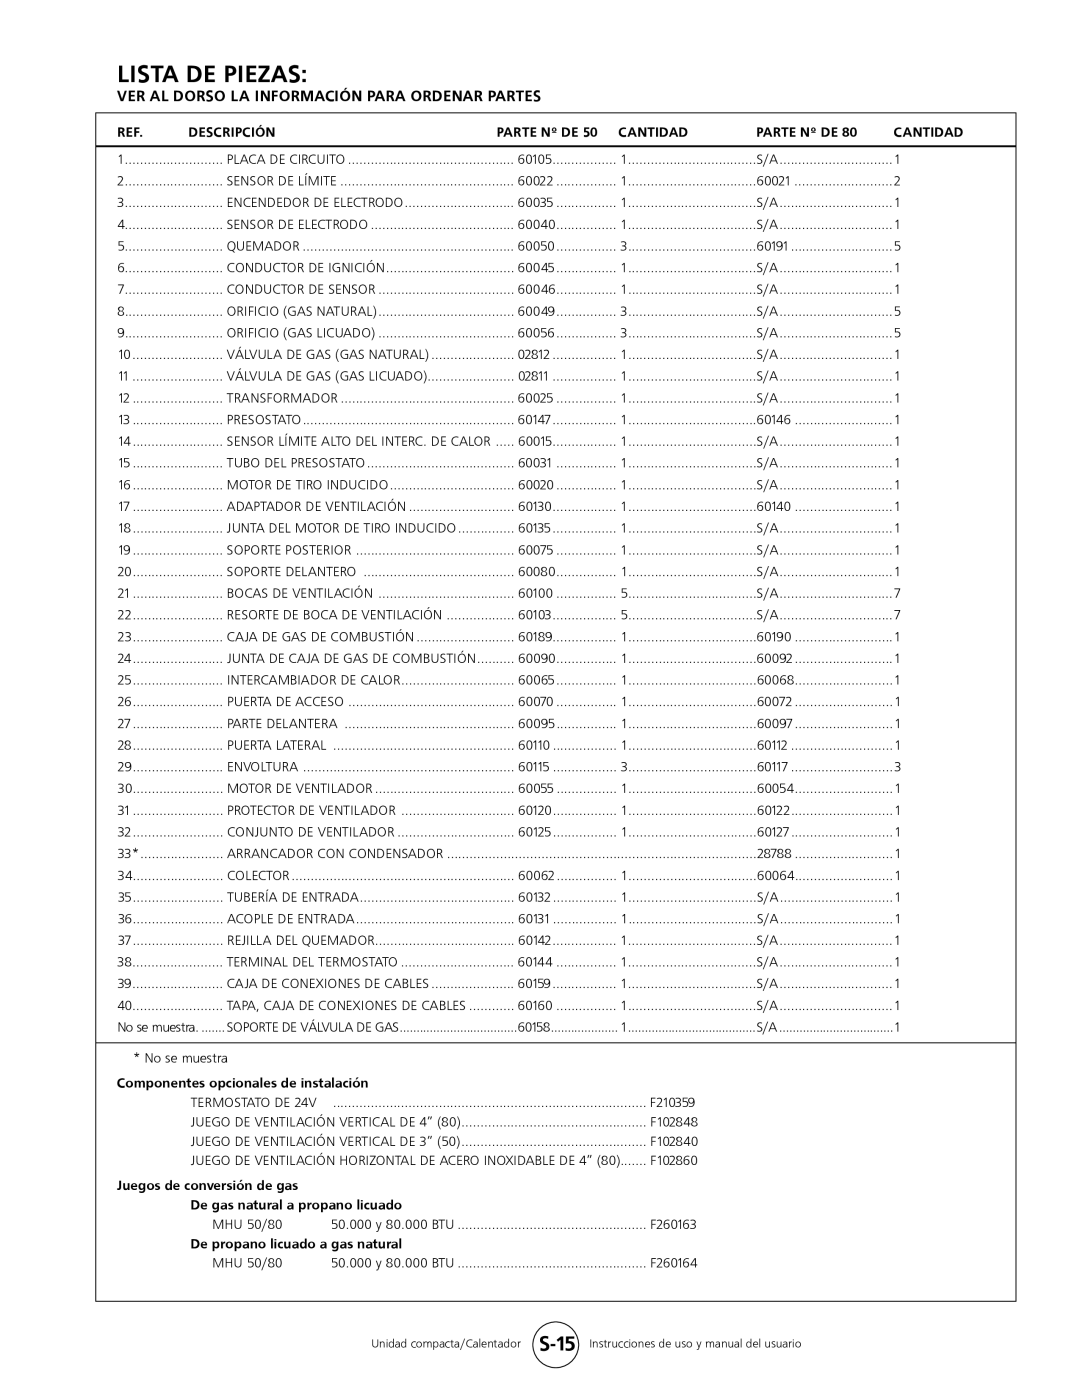 Mr. Heater MHU 80, MHU 50 Lista De Piezas, Descripción, Cantidad, Parte Nº De, Componentes opcionales de instalación 